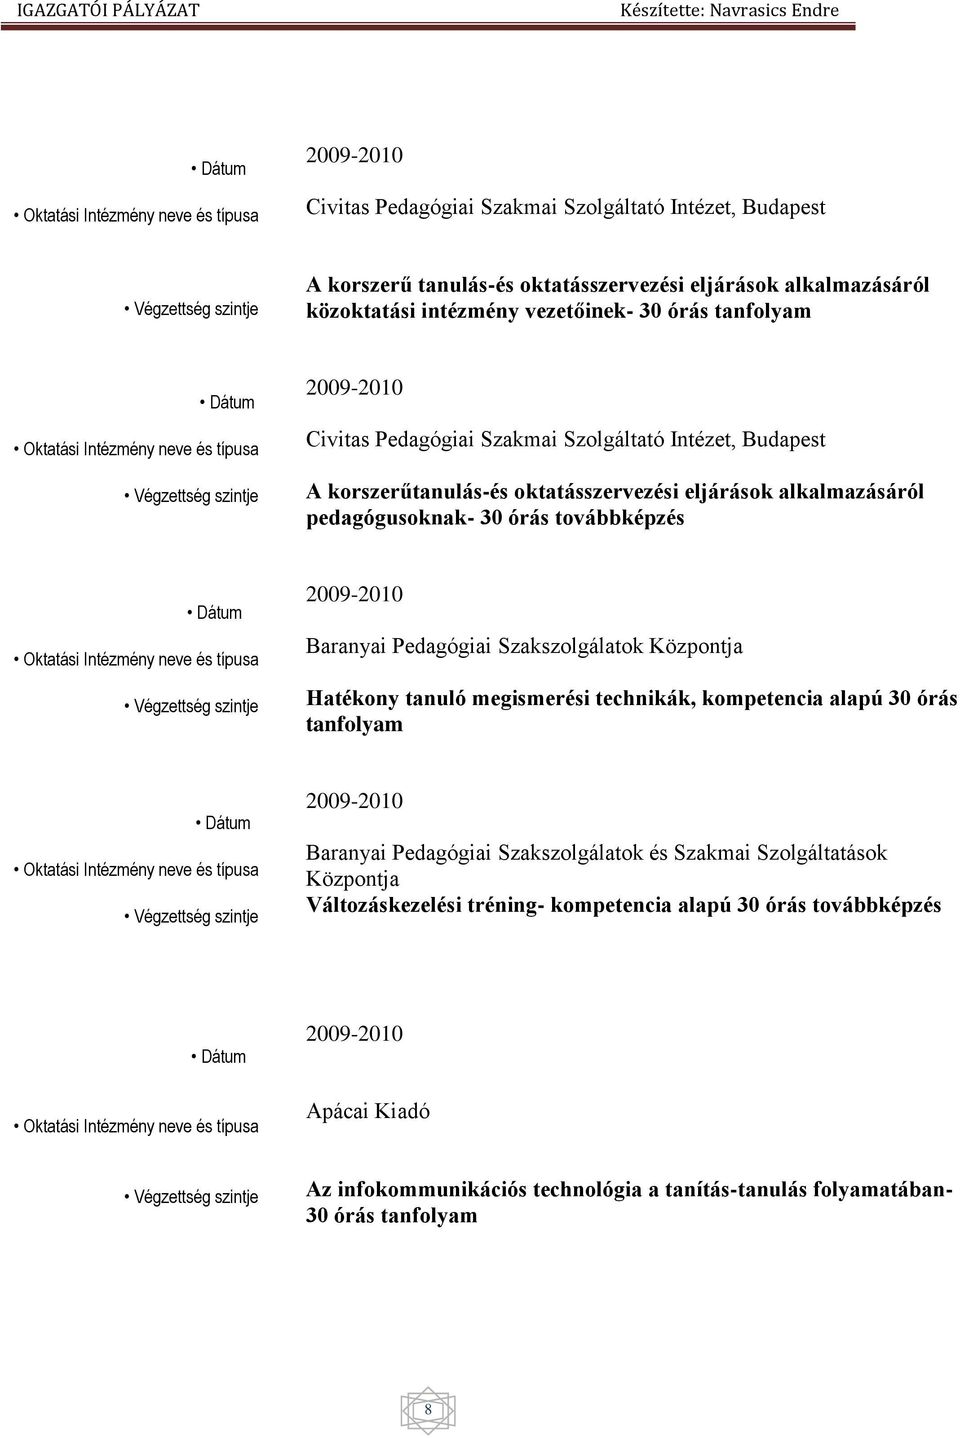 oktatásszervezési eljárások alkalmazásáról pedagógusoknak- 30 órás továbbképzés Dátum Oktatási Intézmény neve és típusa Végzettség szintje 2009-2010 Baranyai Pedagógiai Szakszolgálatok Központja